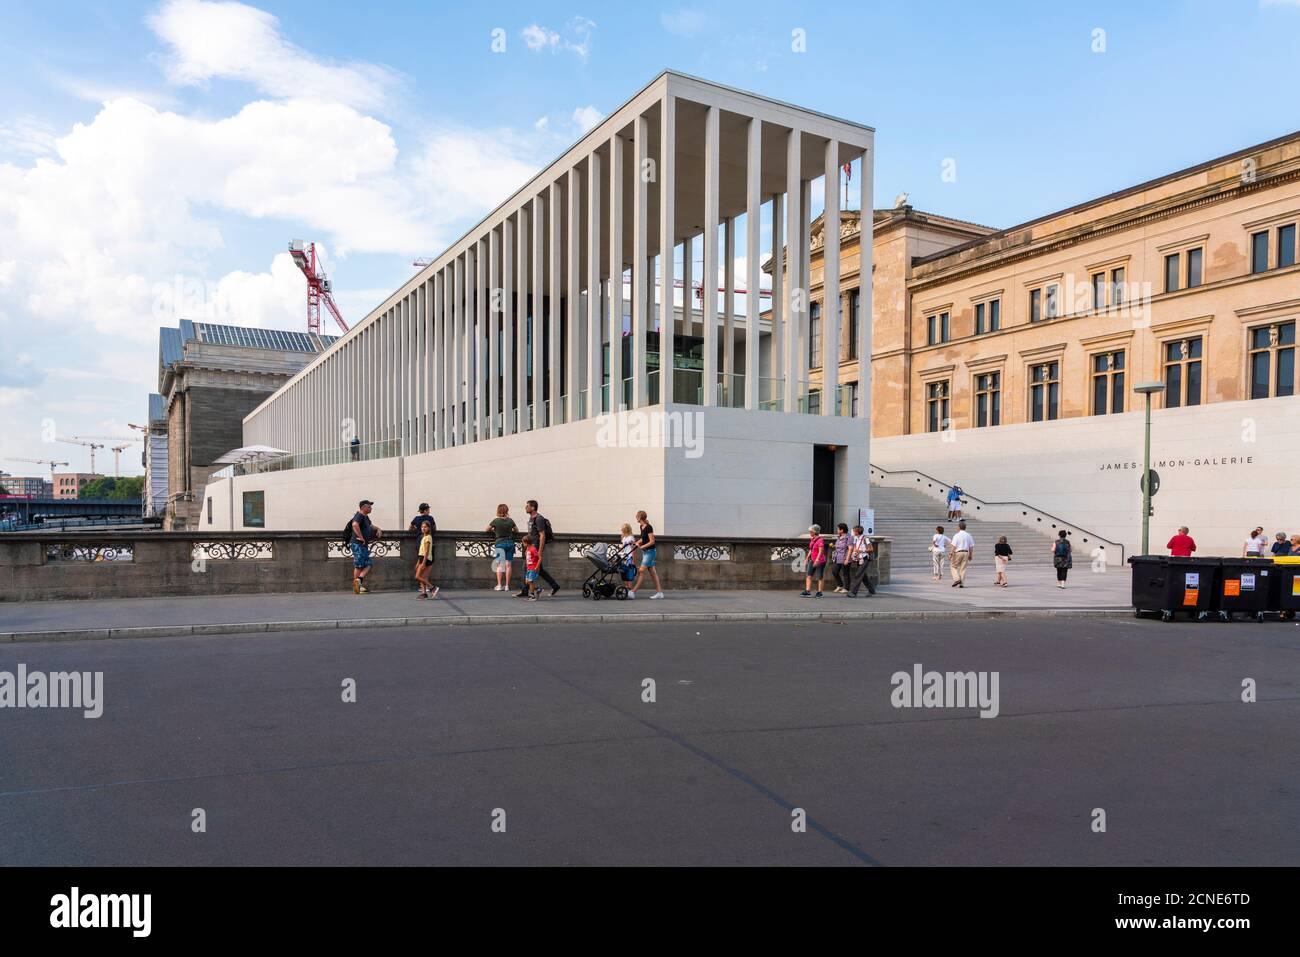 James Simon Galerie und Pergamonmuseum auf der Museumsinsel, UNESCO Weltkulturerbe, Berlin, Deutschland, Europa Stockfoto